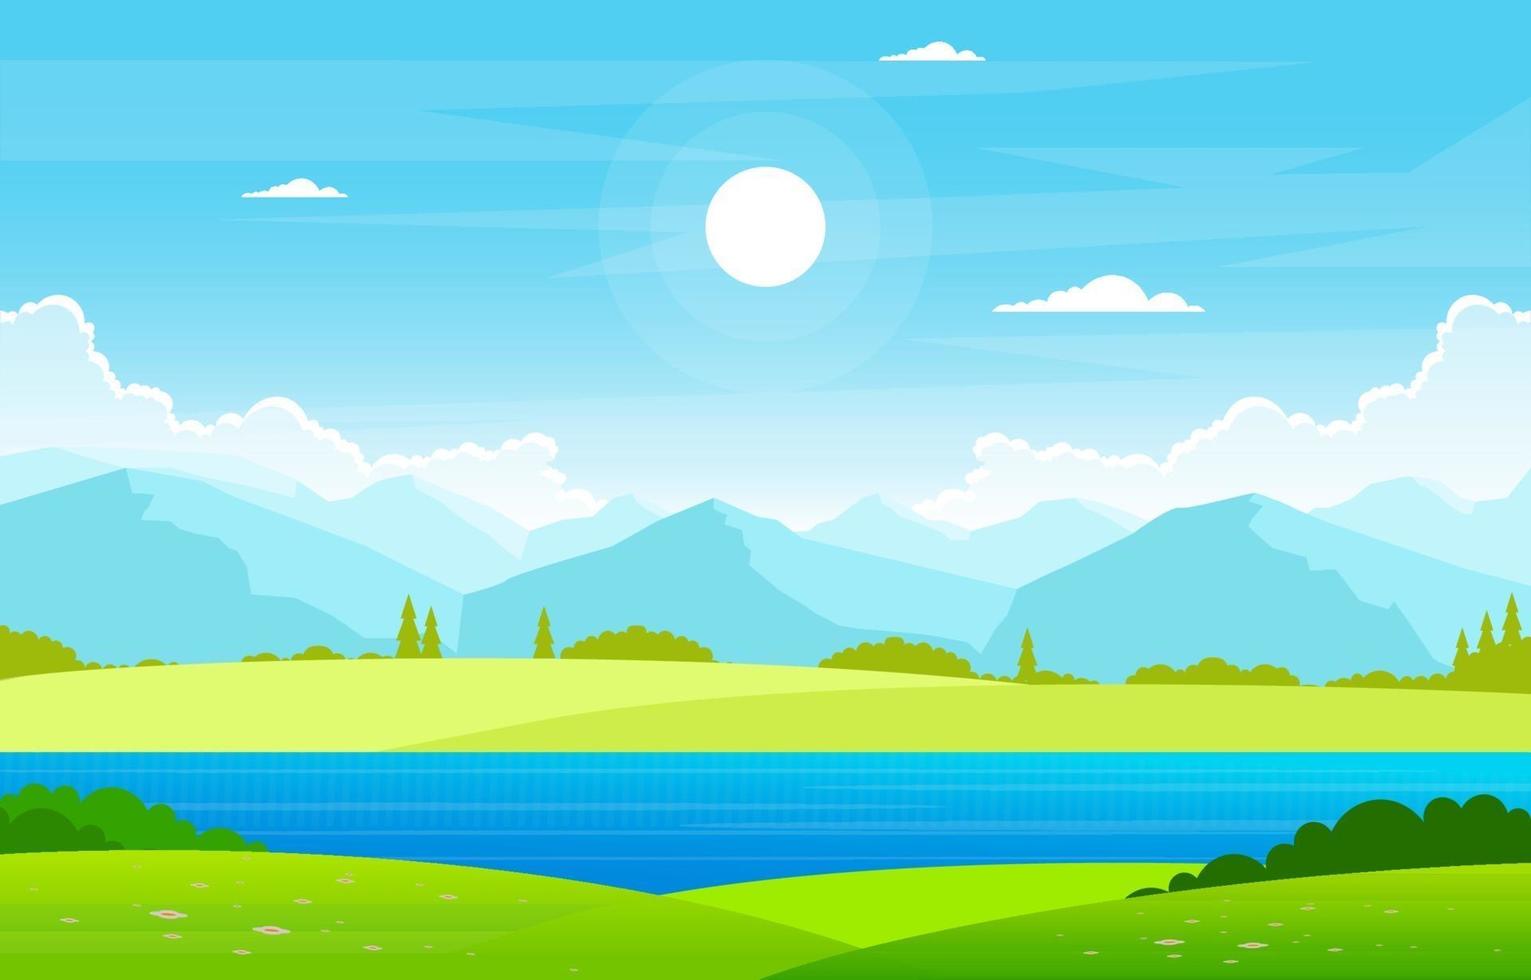 lago de verano con ilustración de paisaje de campo verde vector